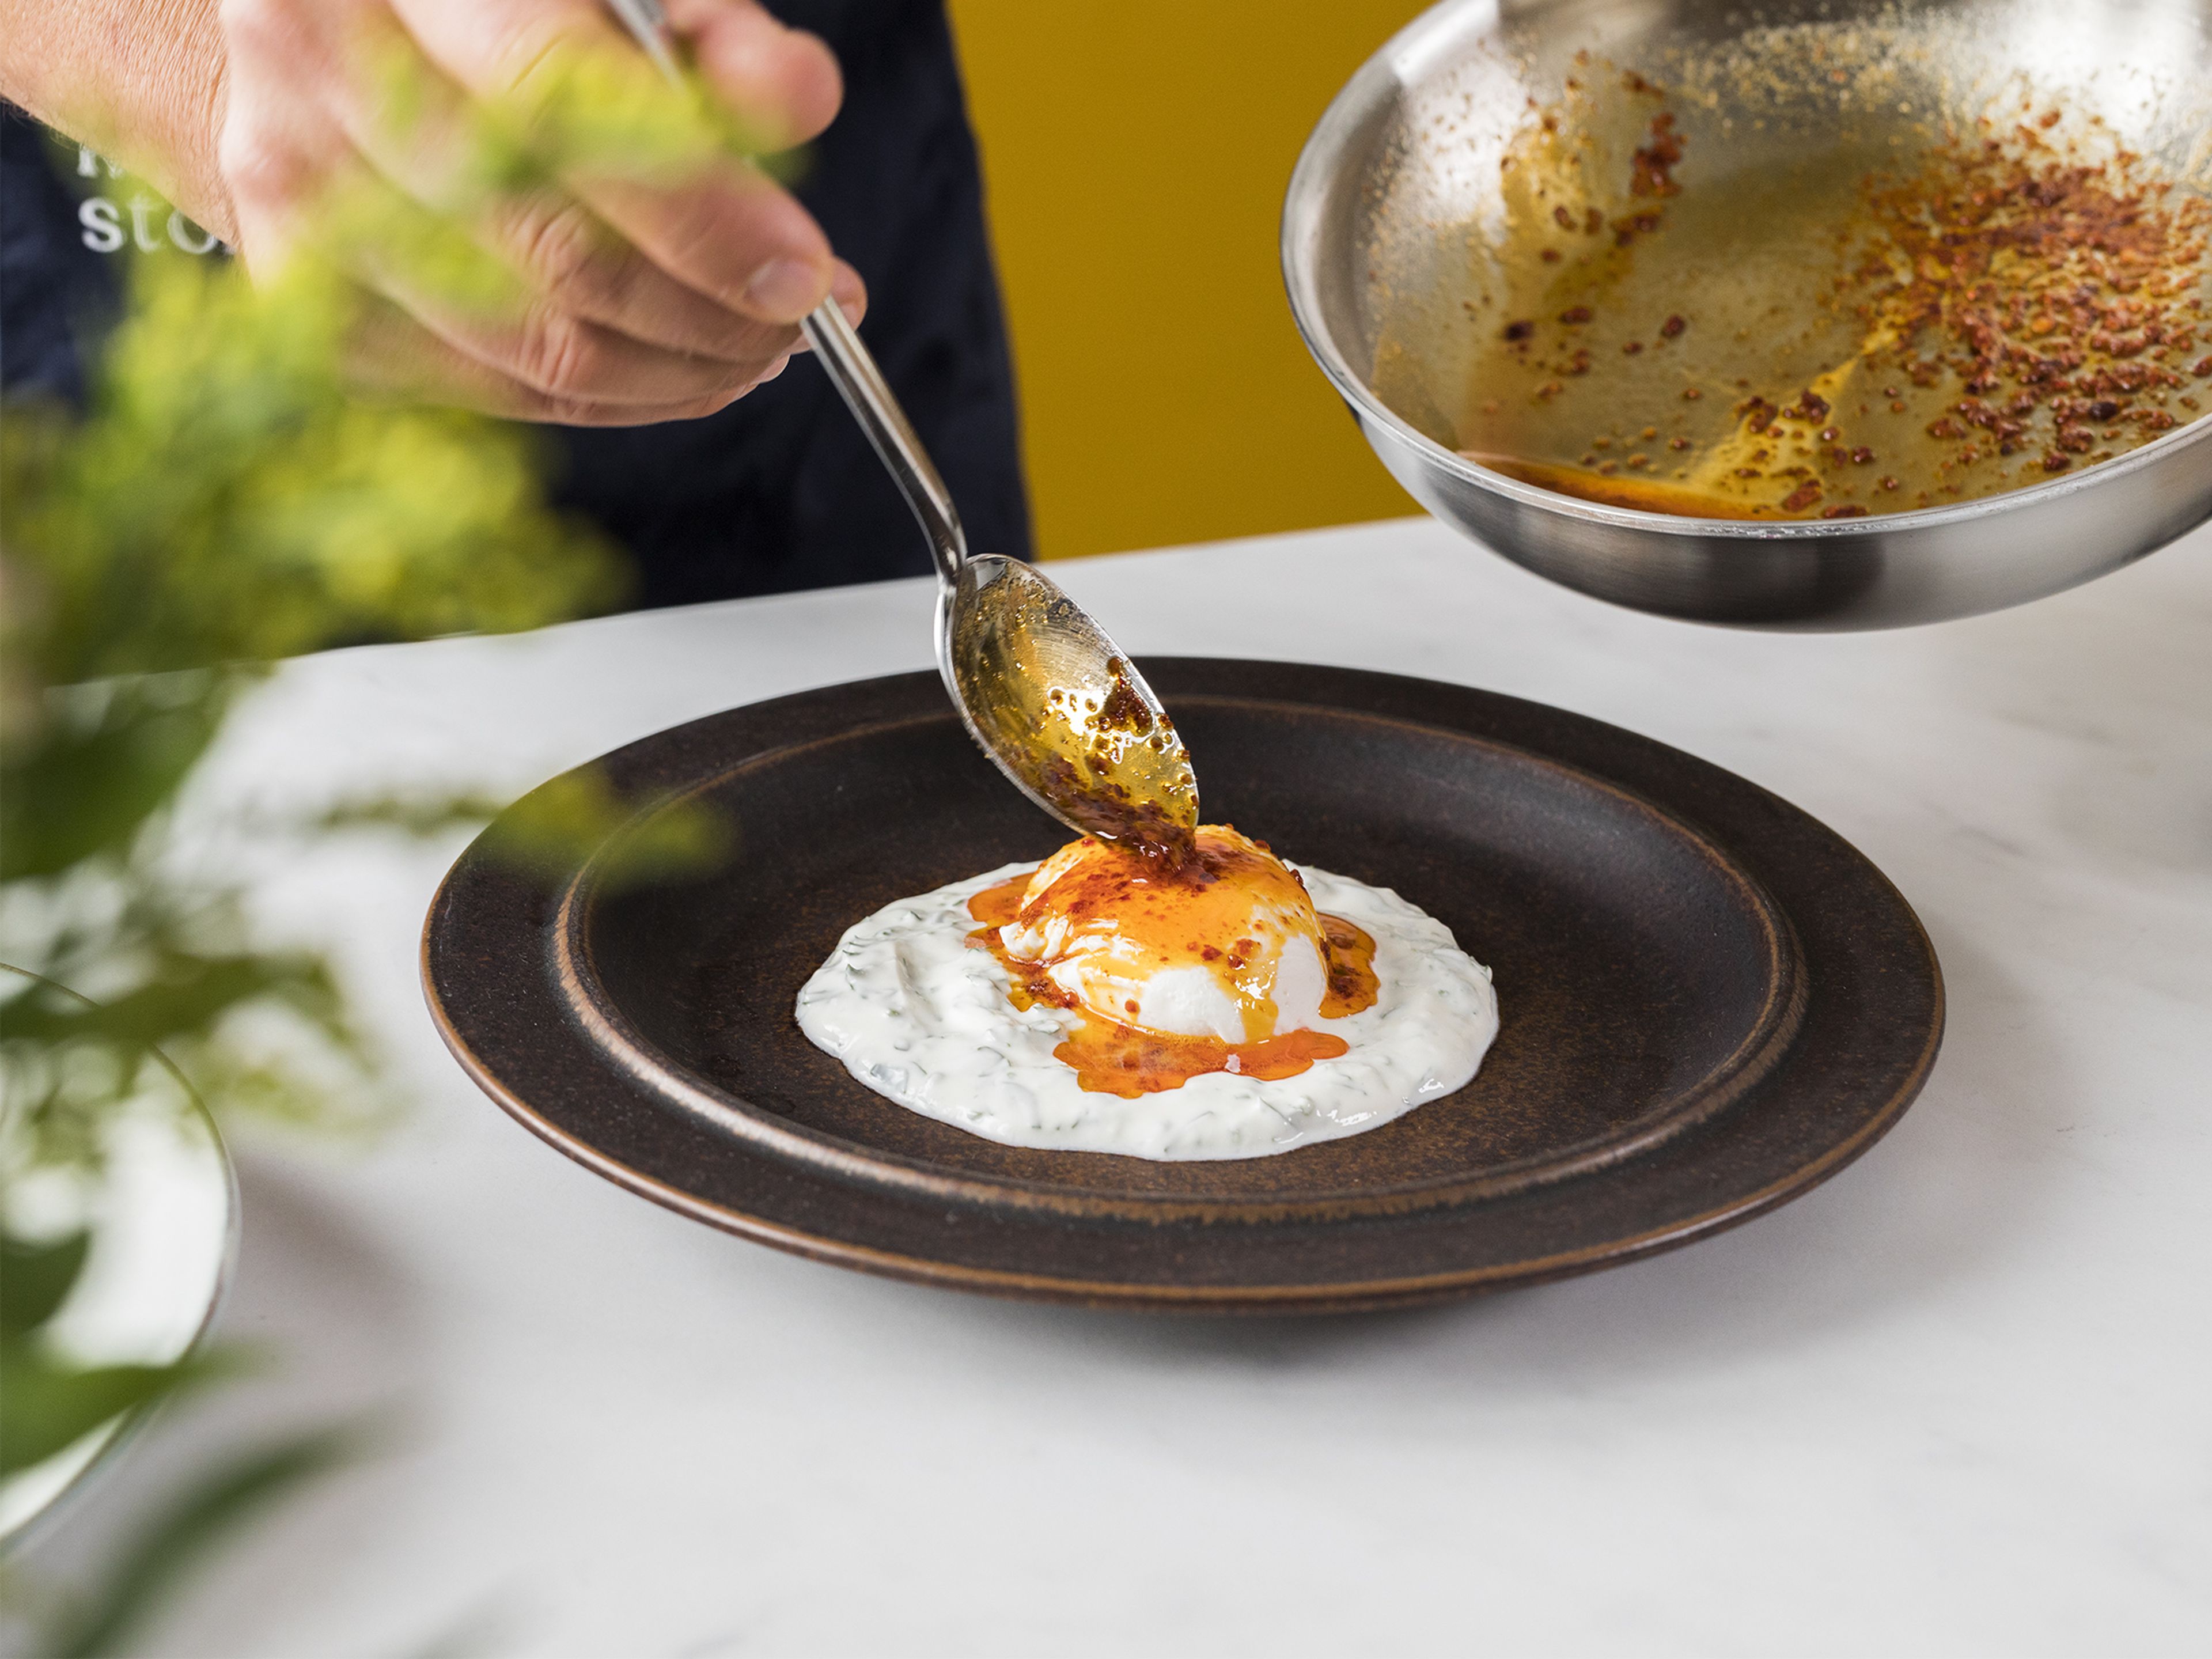 Den Joghurt gleichmäßig auf zwei Teller verteilen. Die pochierten Eier in der Mitte platzieren und mit der Chili-Butter beträufeln. Mit Petersilie und Meersalz garnieren und mit Sauerteigbrot servieren. Guten Appetit!